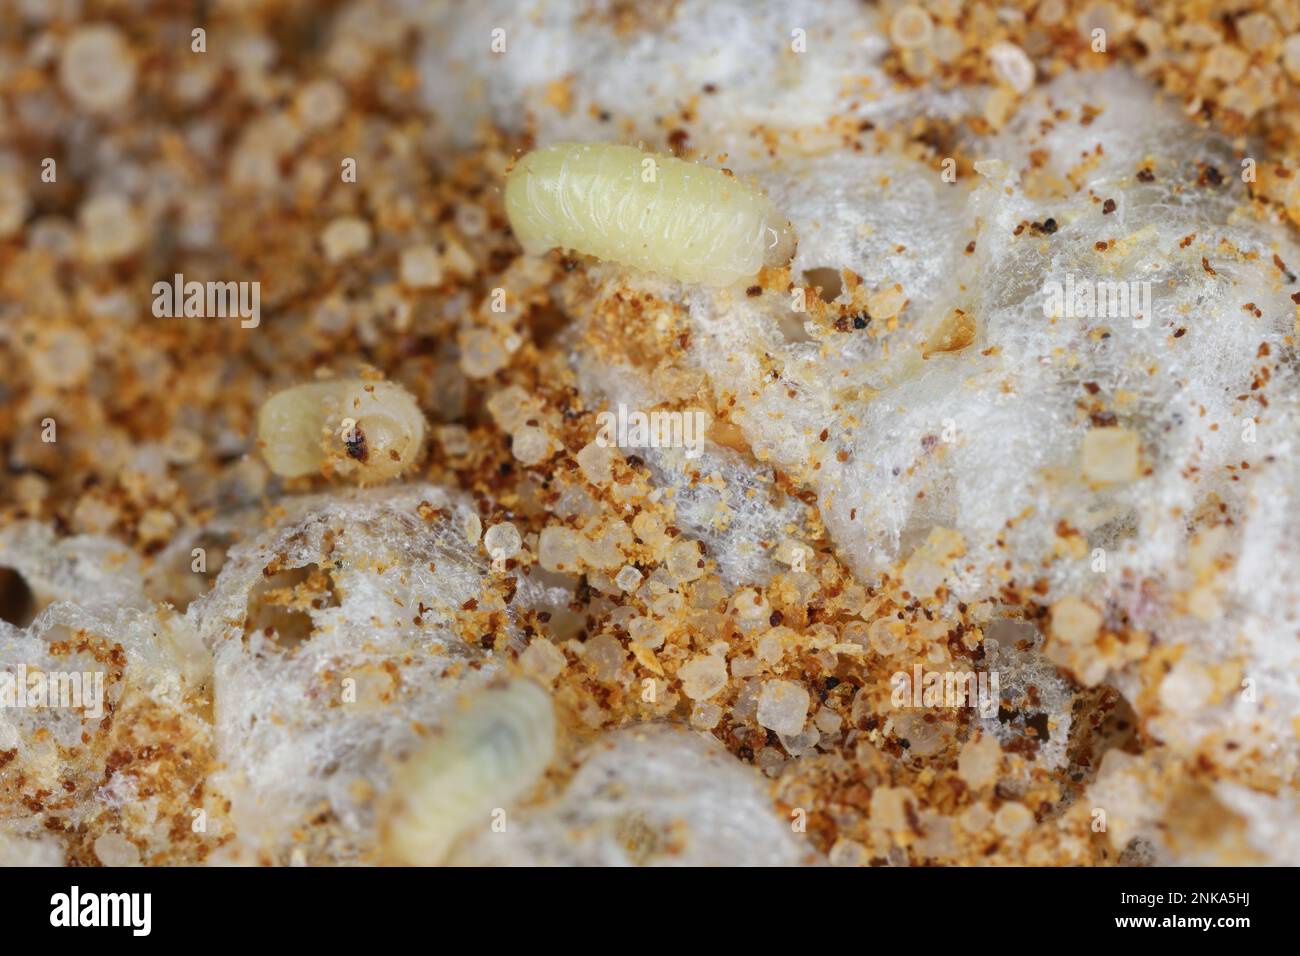 Biscuit, drugstore or bread beetle (Stegobium paniceum) larvae stored product pest on cookie debris. Stock Photo